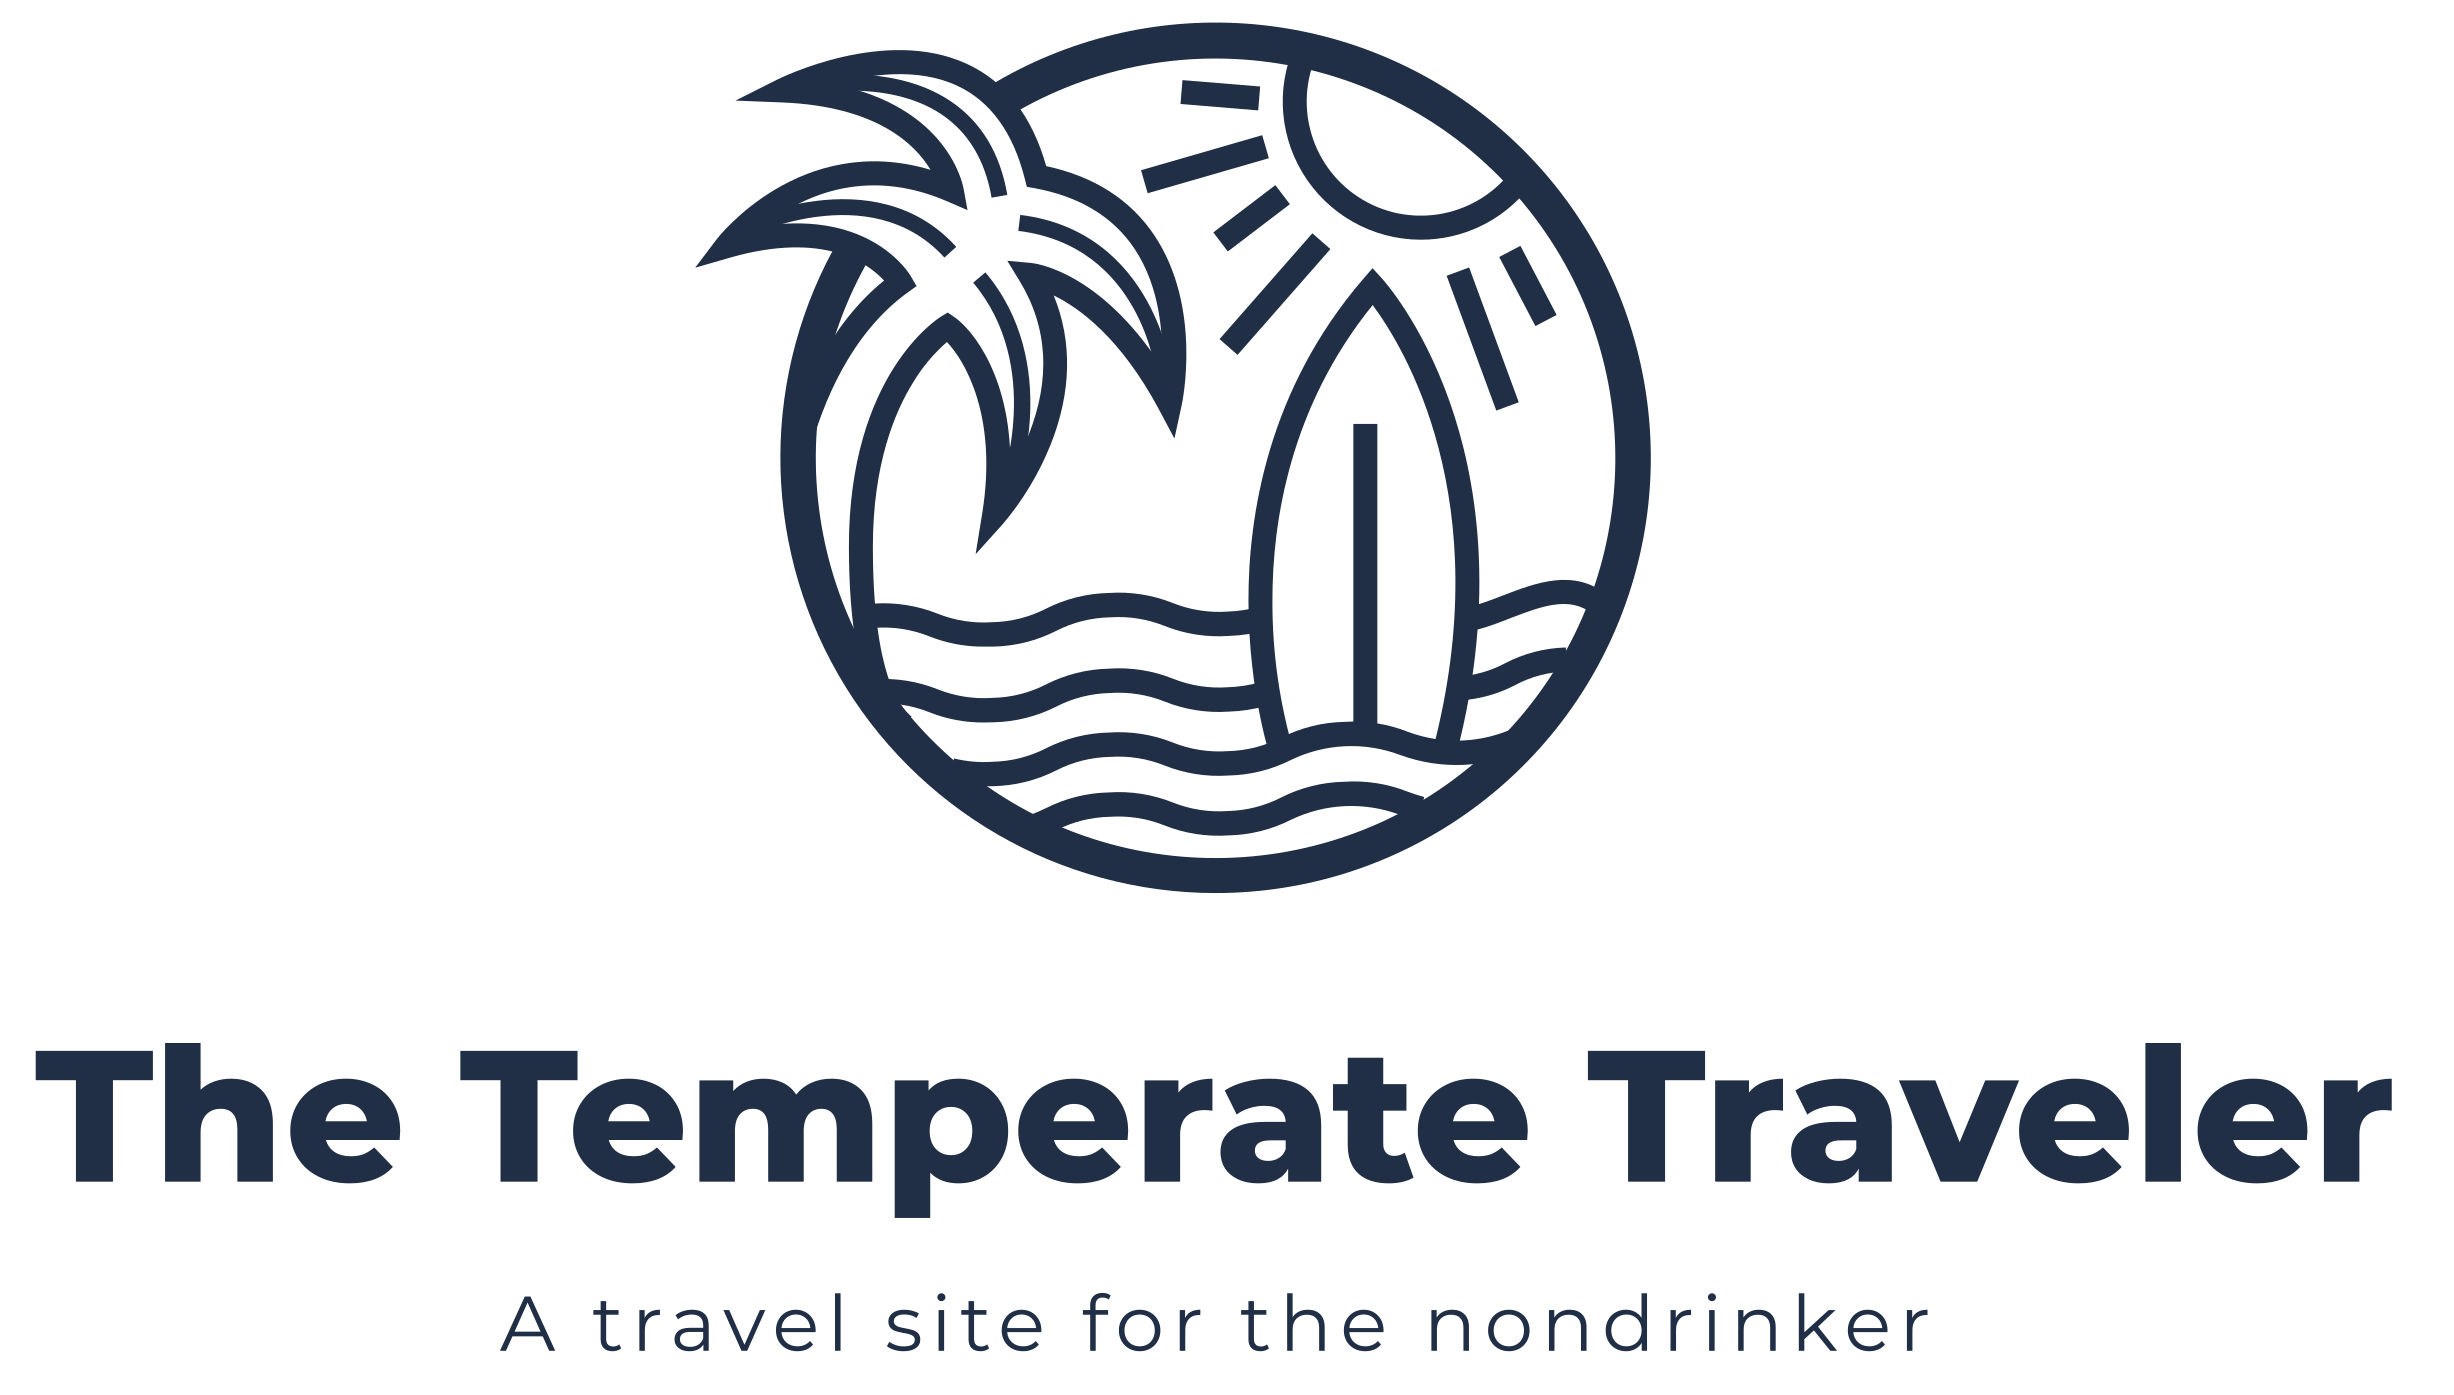 The Temperate Traveler